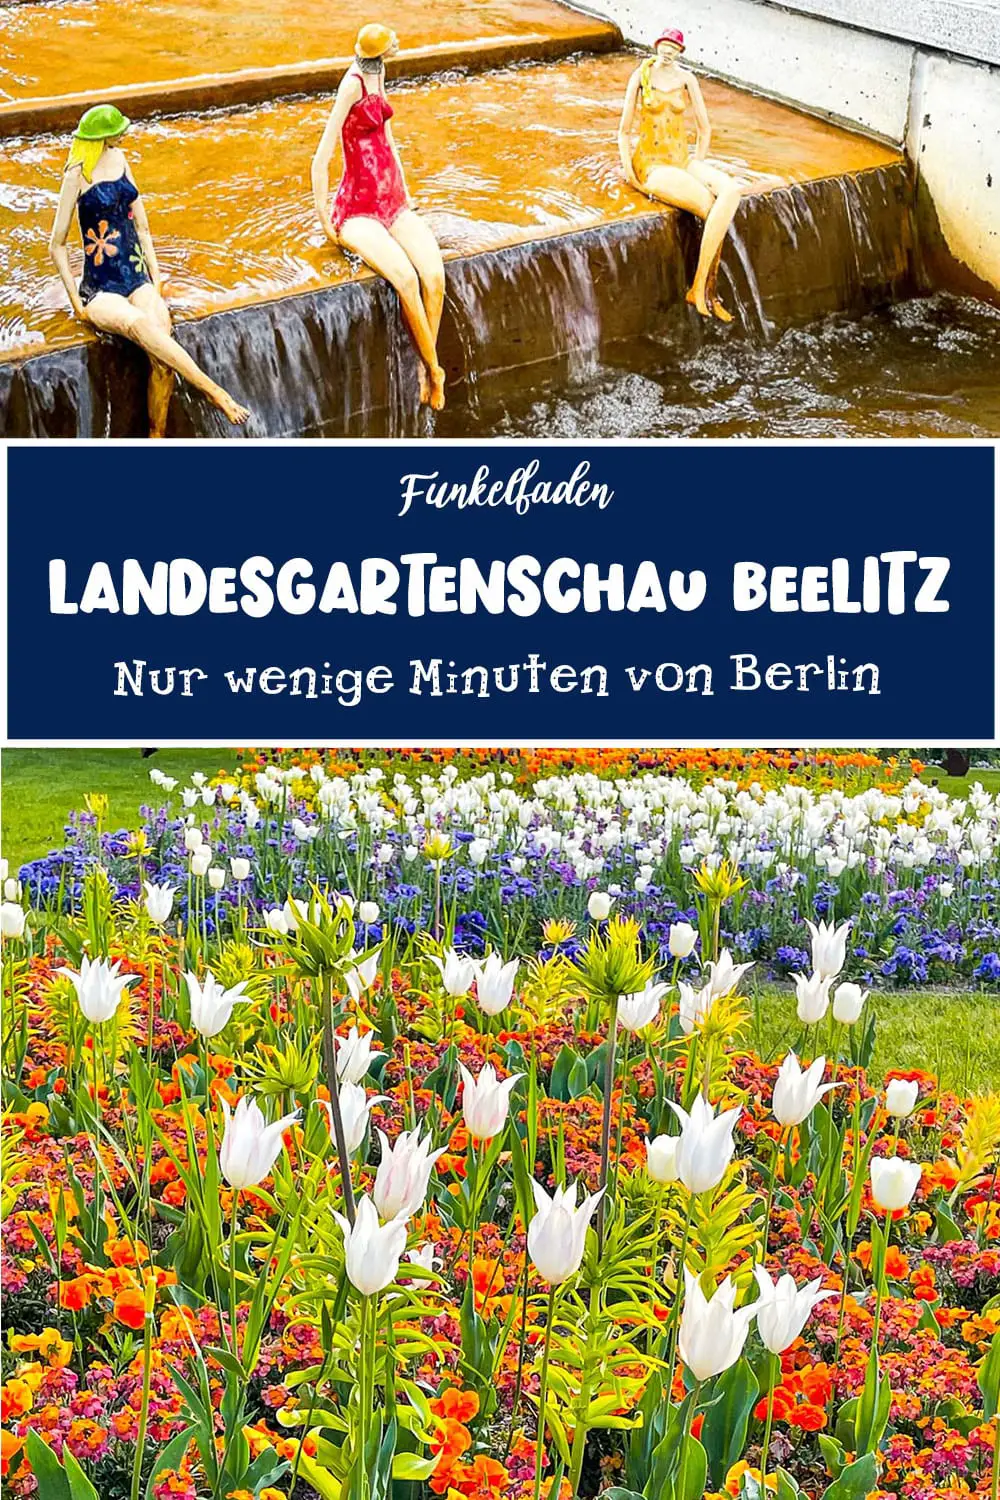 Zu Gast auf der Landesgartenschau Beelitz 2022